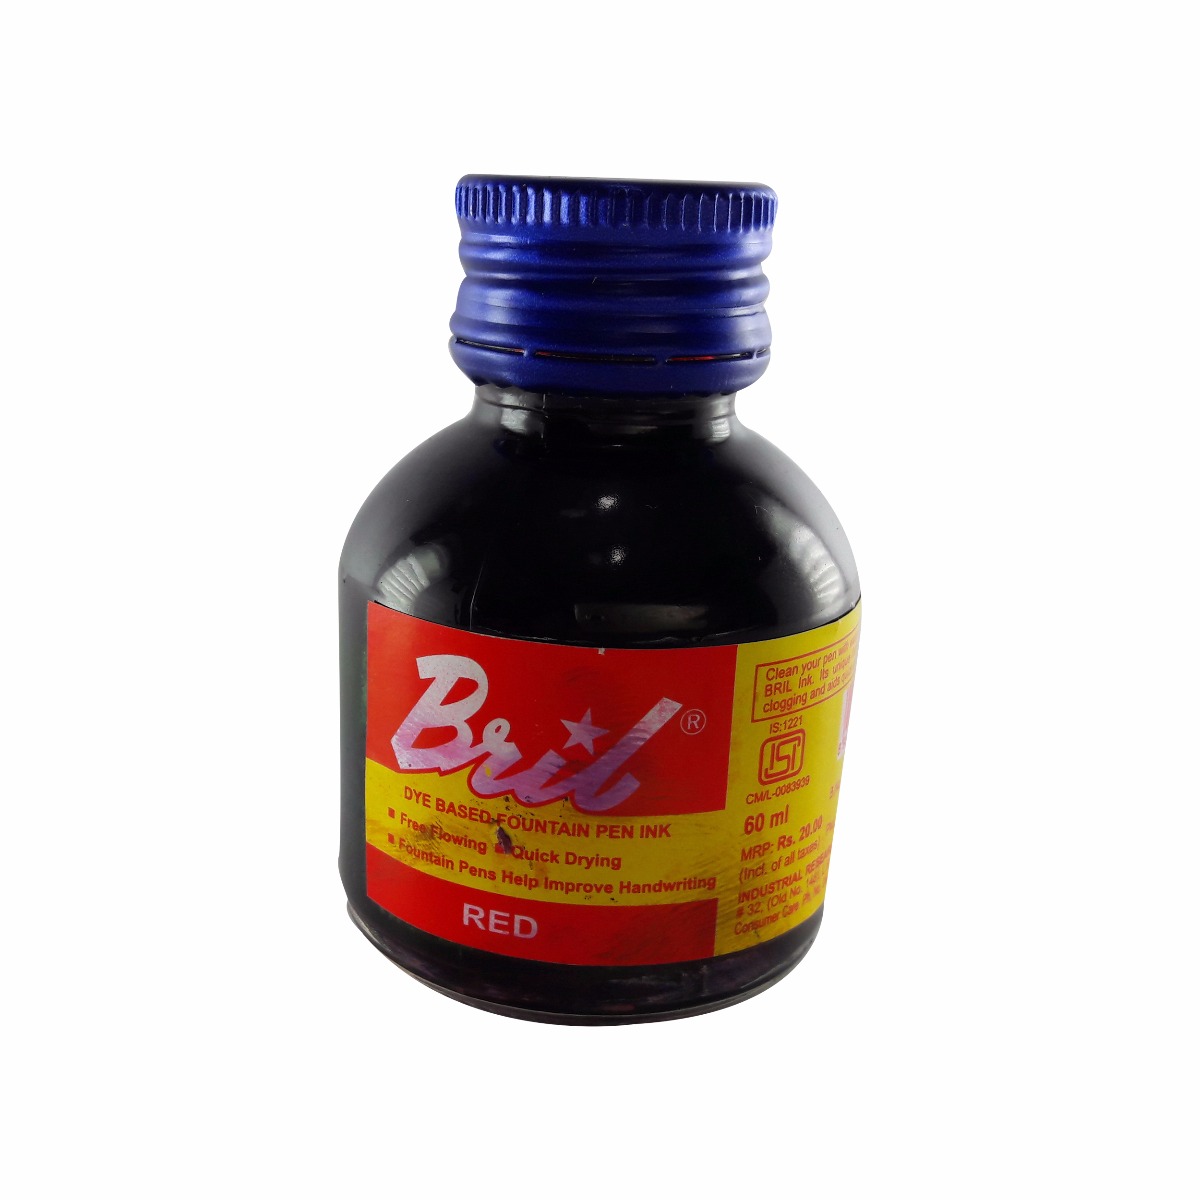 Bril Model: 70012 Red color 60 ml ink bottle